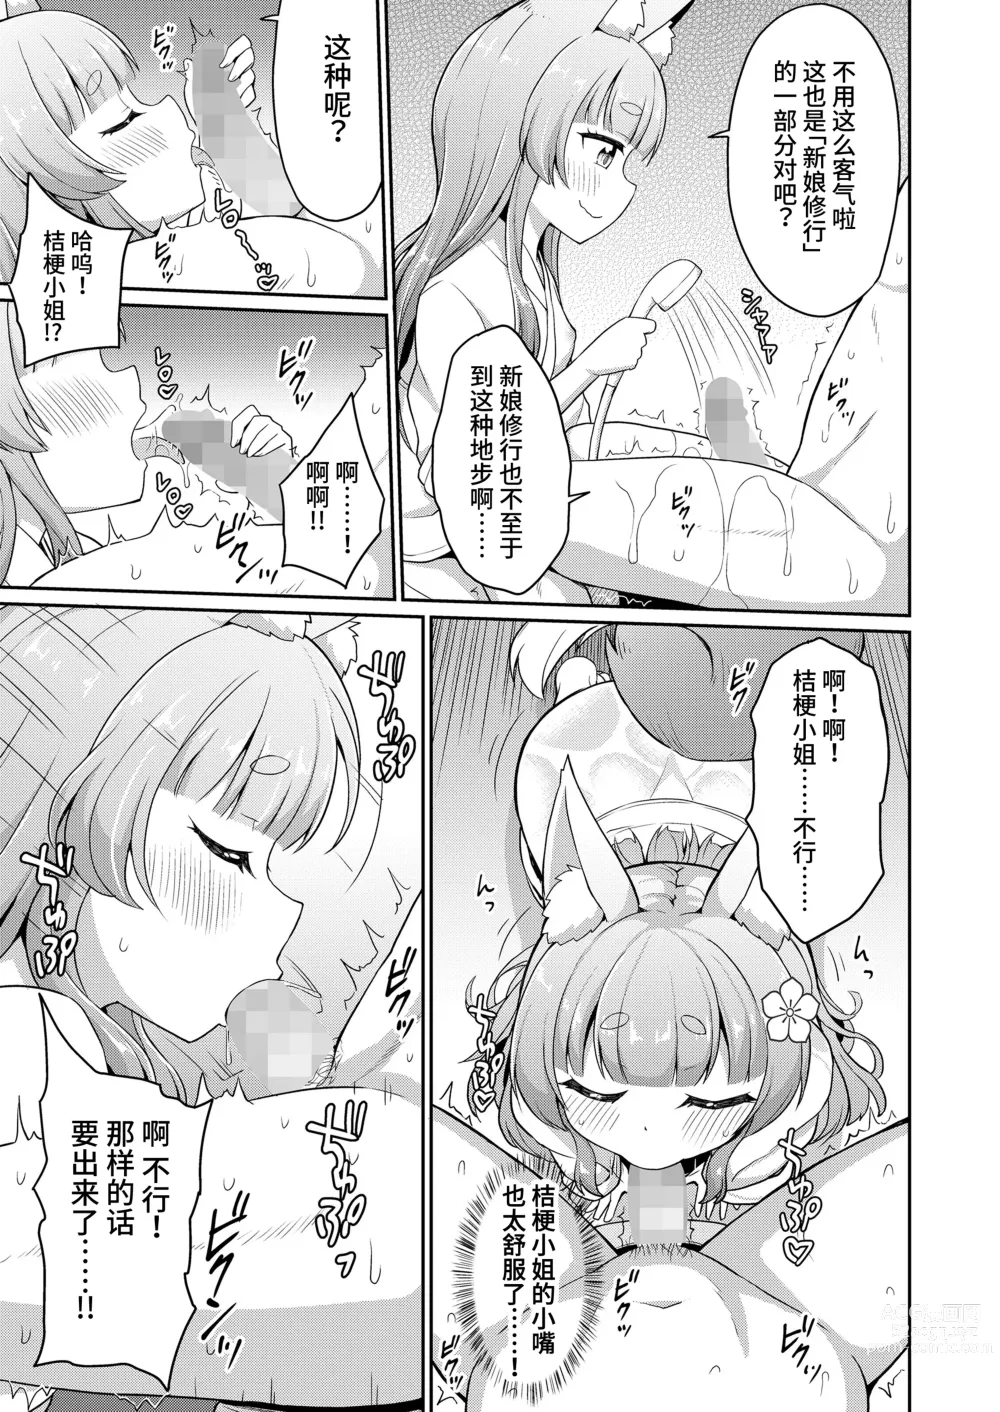 Page 11 of manga 婚活 1-2